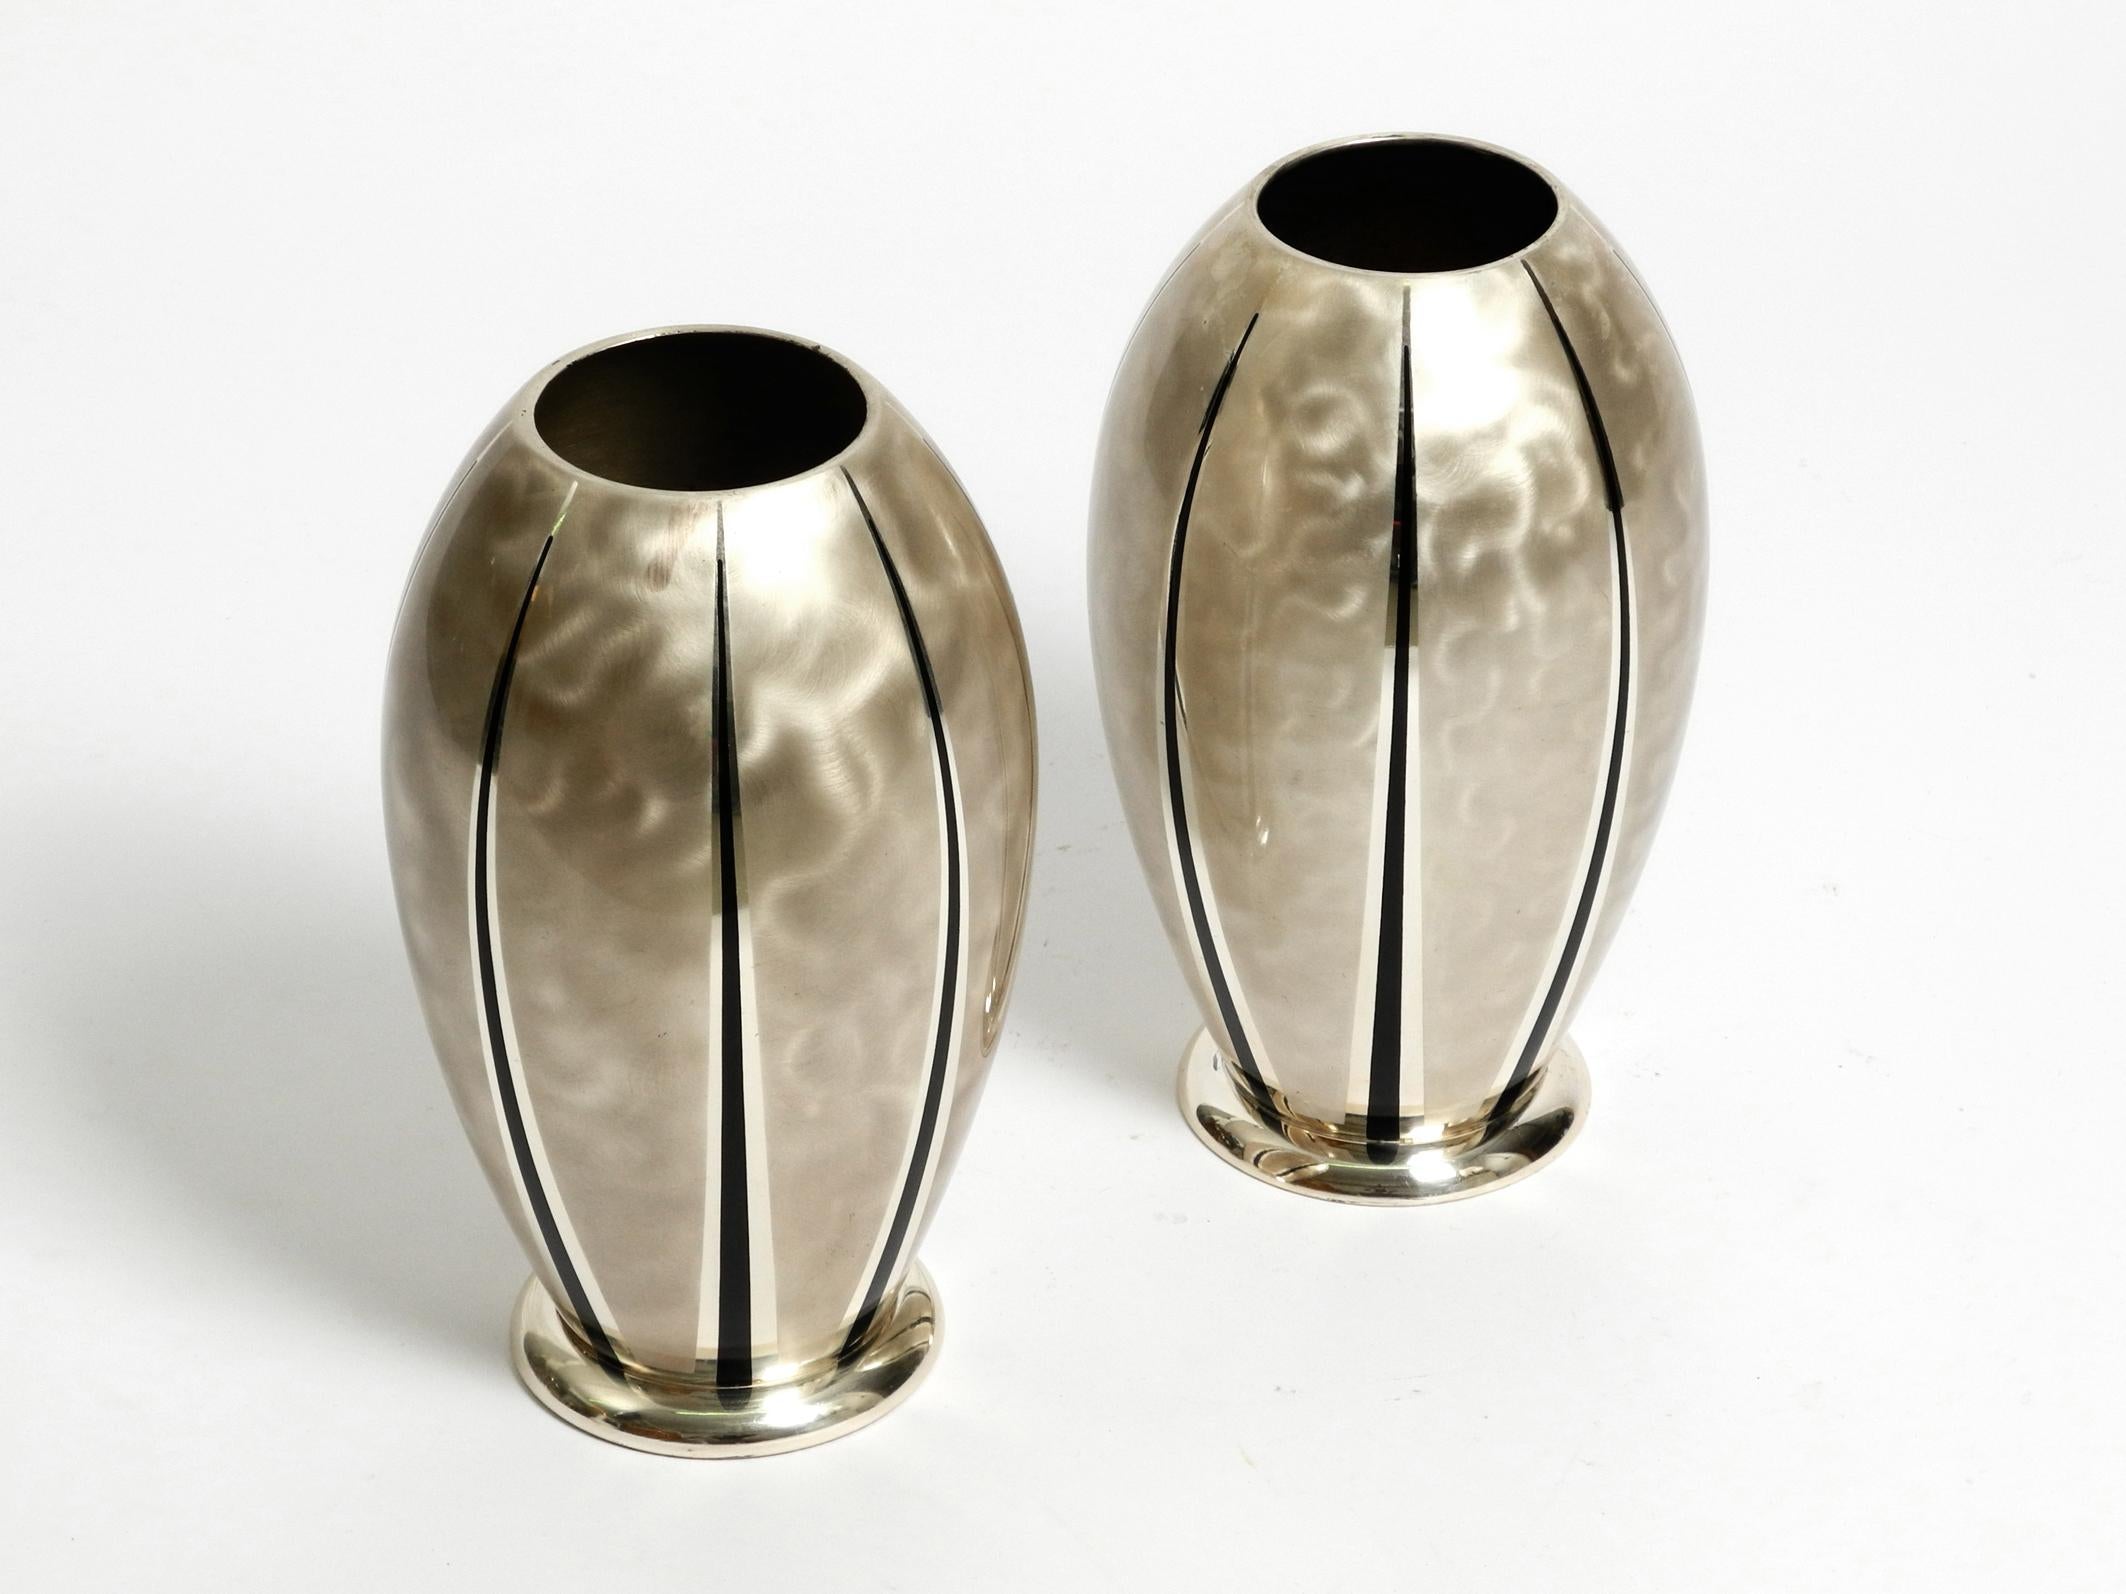 Paire de grands vases de table en laiton argenté de WMF Ikora. Fabriqué dans les années 1950. Fabriqué en Allemagne.
Magnifique design du milieu du siècle. L'argent est poli mat avec des bandes noires.
Les deux vases sont de forme et de taille